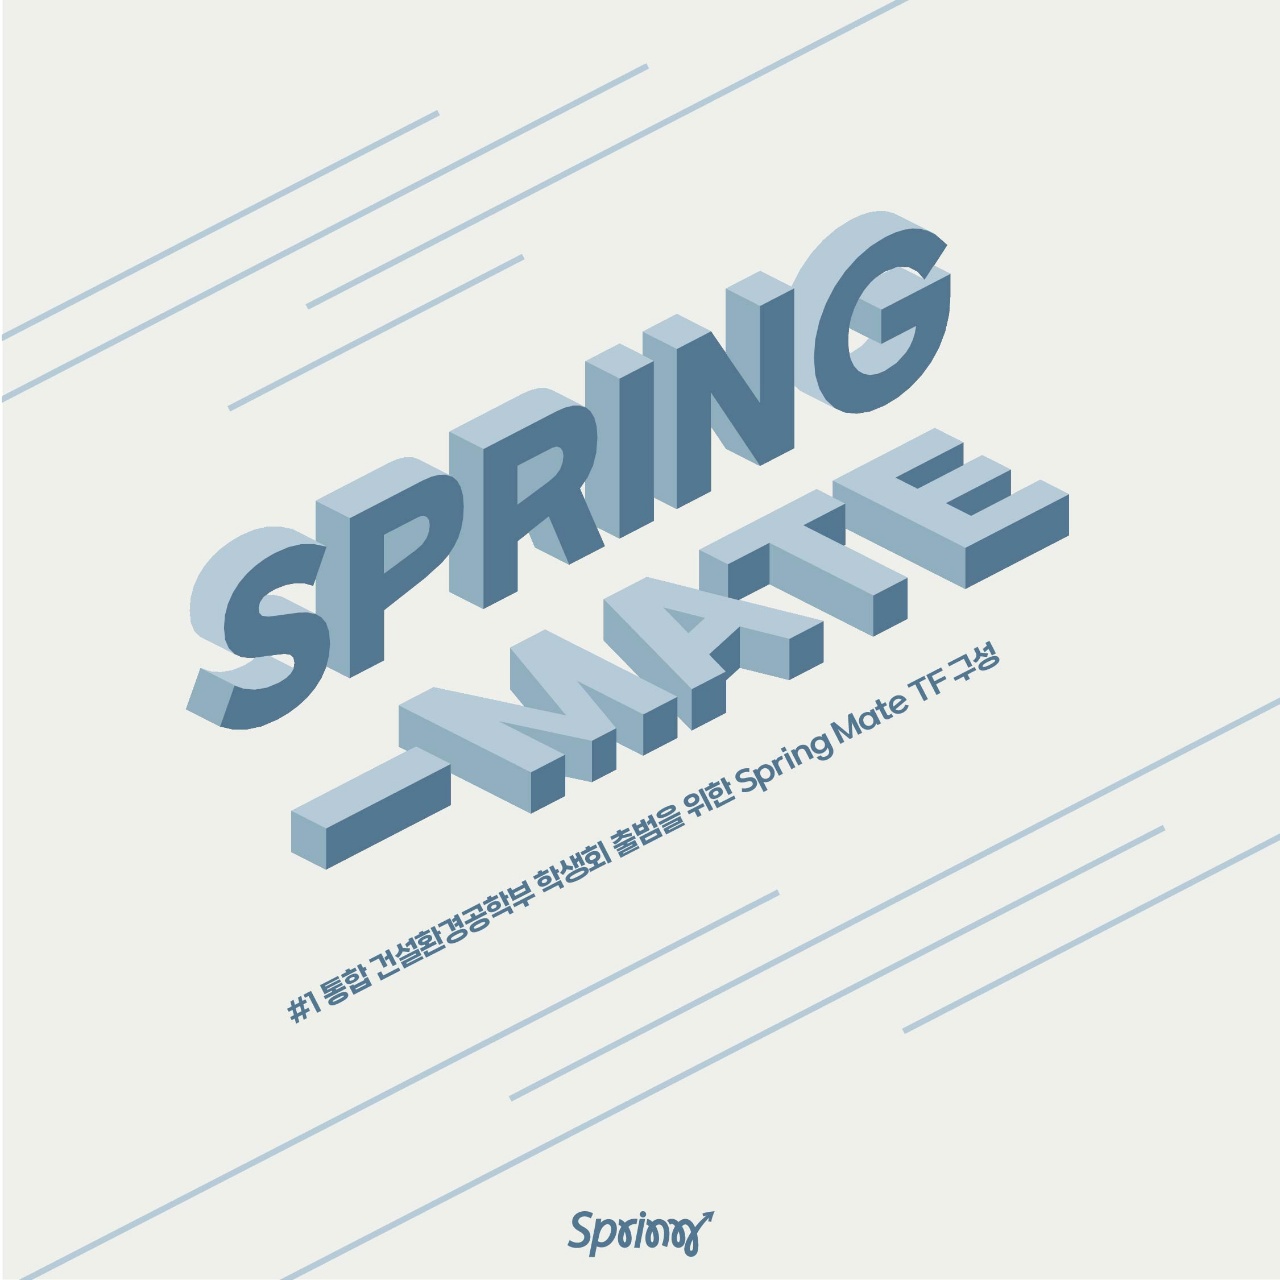 Spring Mate (Spring Official Instagram)